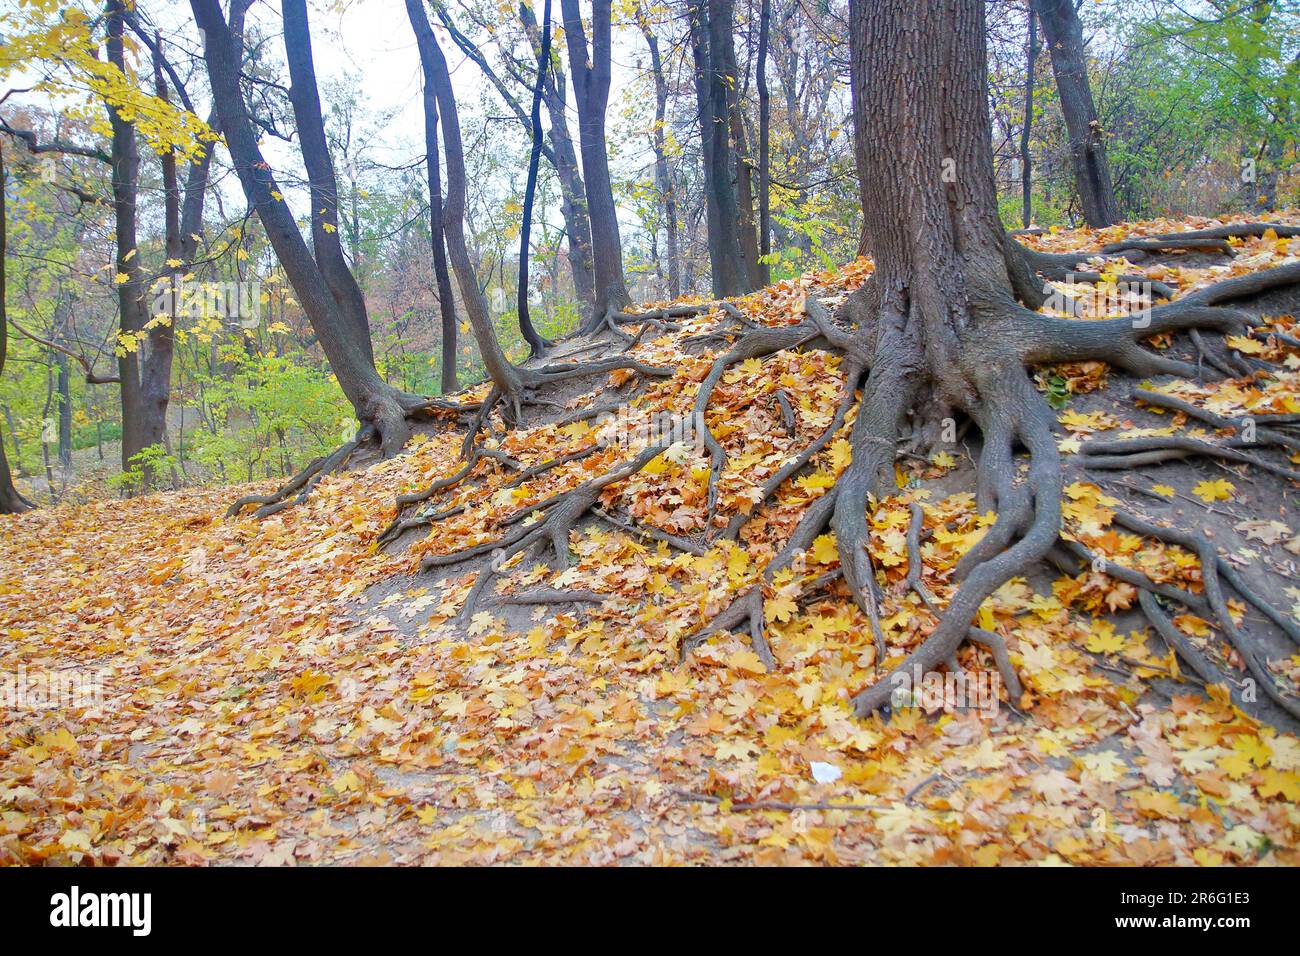 La photo a été prise dans un parc public de Kiev. La photo montre le feuillage d'automne couvrant les racines puissantes de l'arbre. Banque D'Images